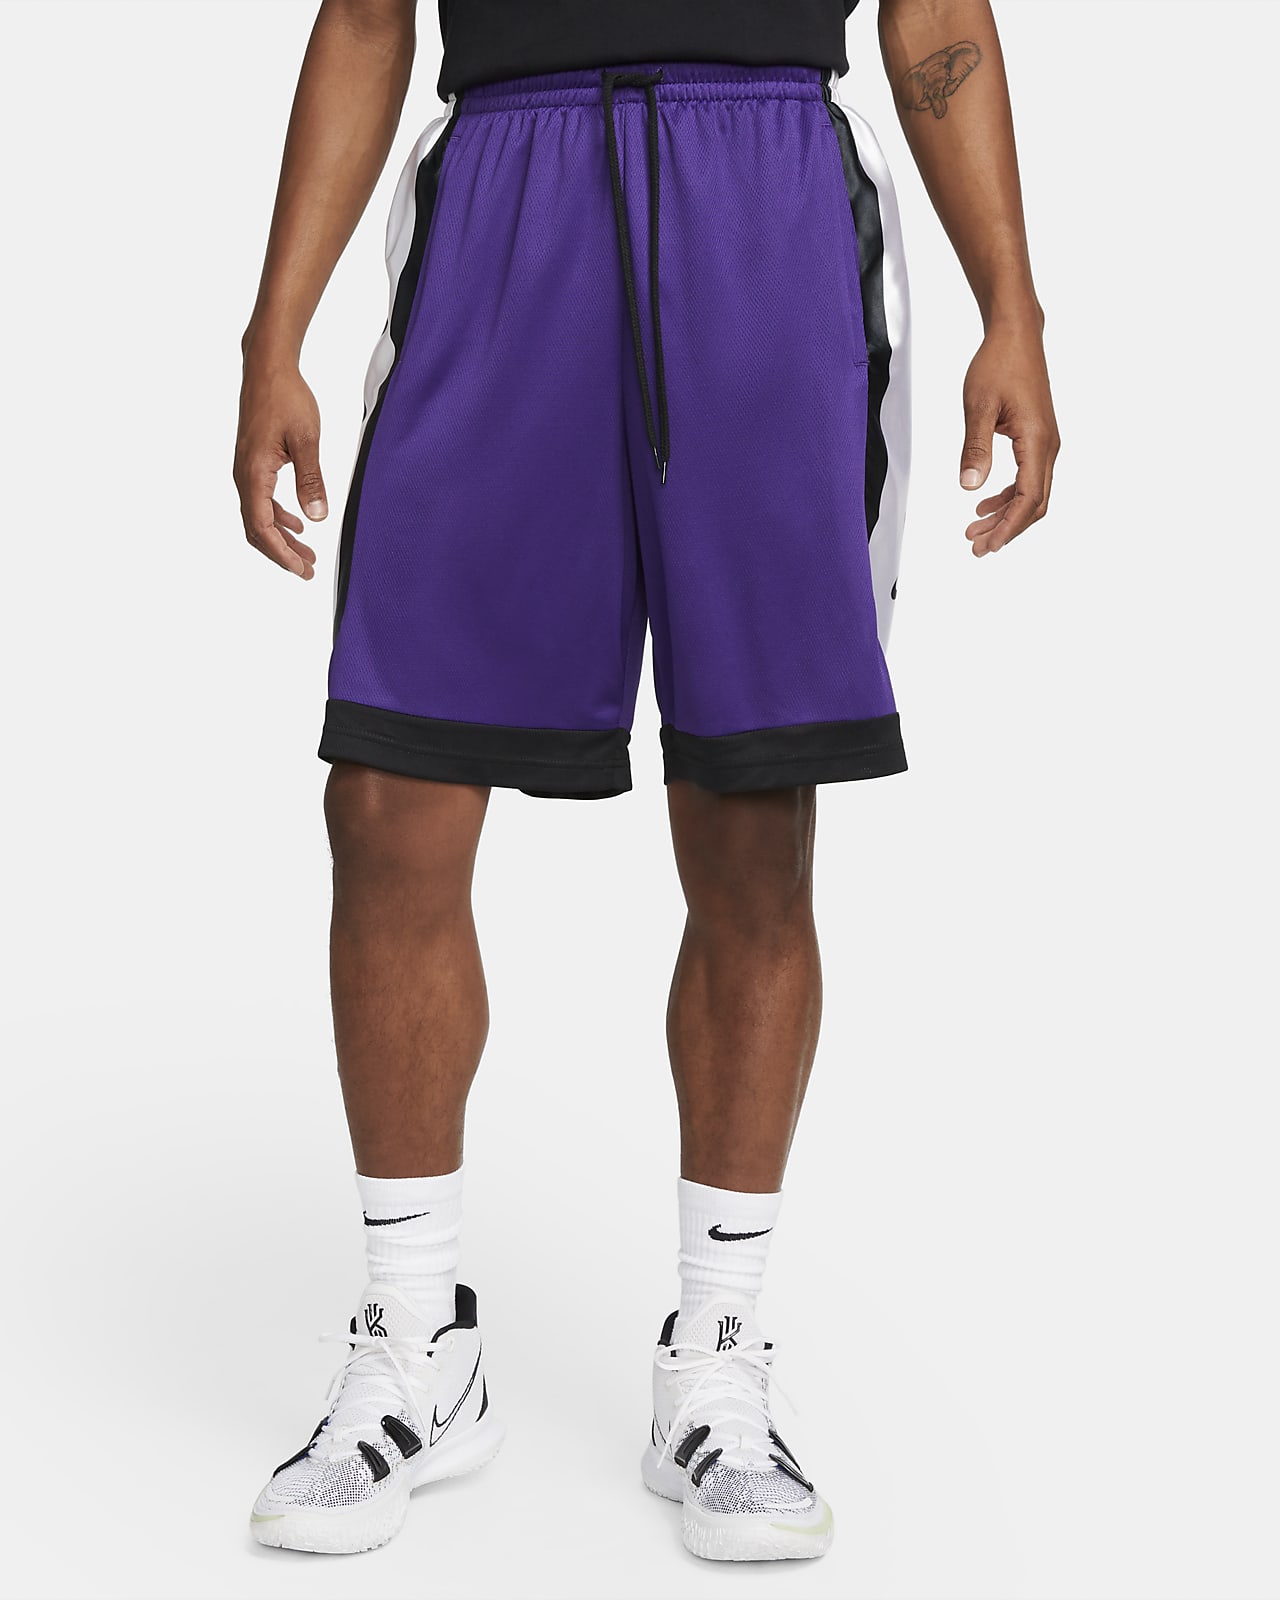 Shorts de básquetbol hombre Nike Elite. Nike.com